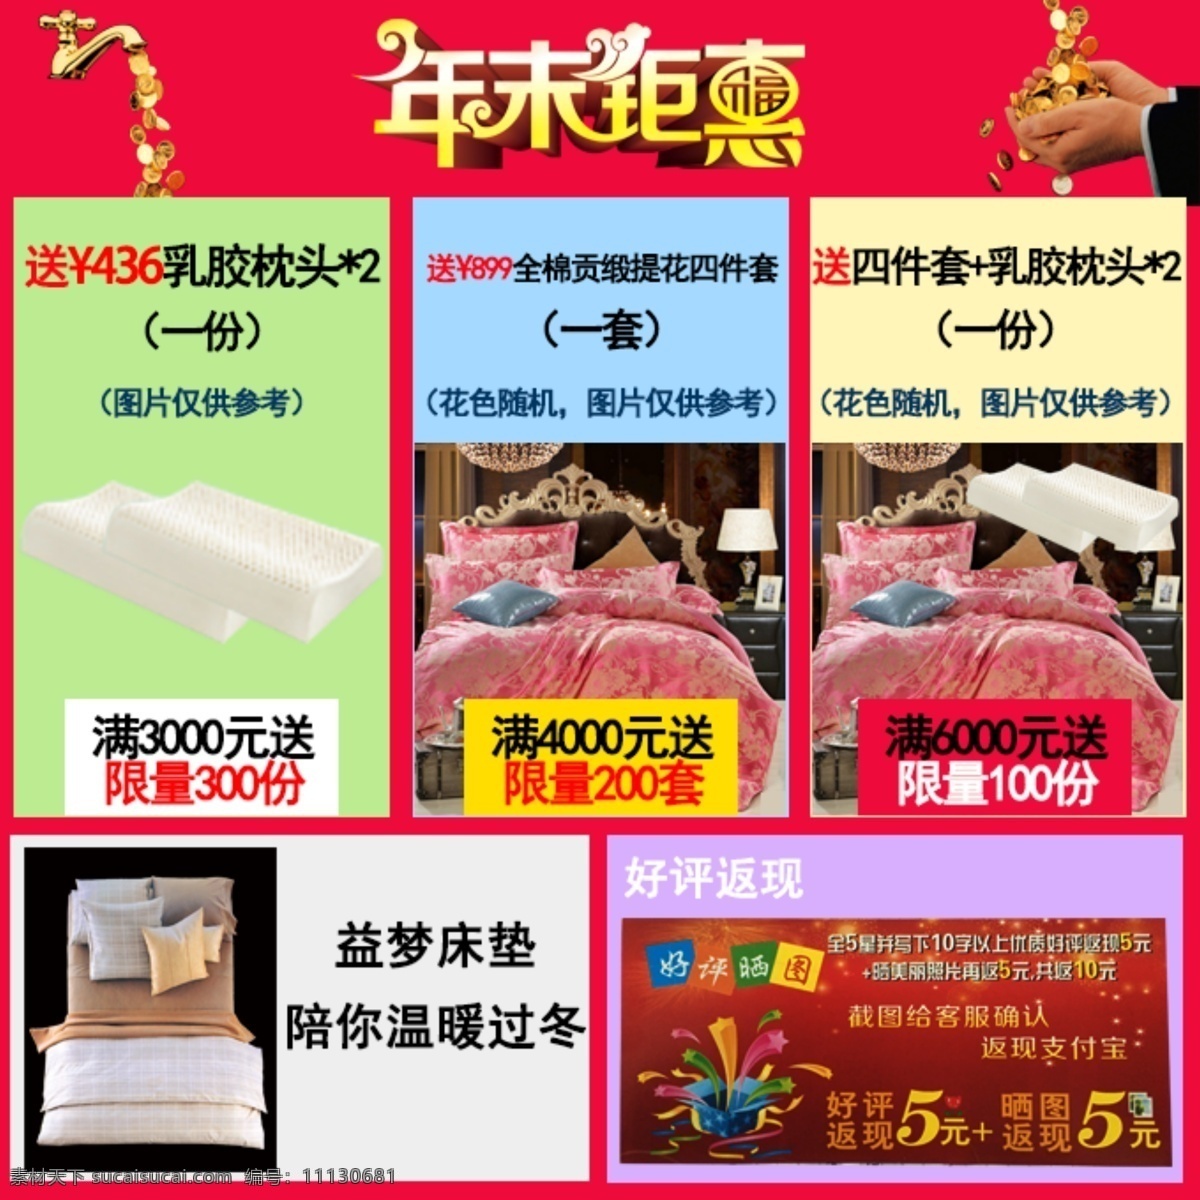 天猫 淘宝 京东 号 店 手机 端 促销活动 淘宝素材 淘宝设计 淘宝模板下载